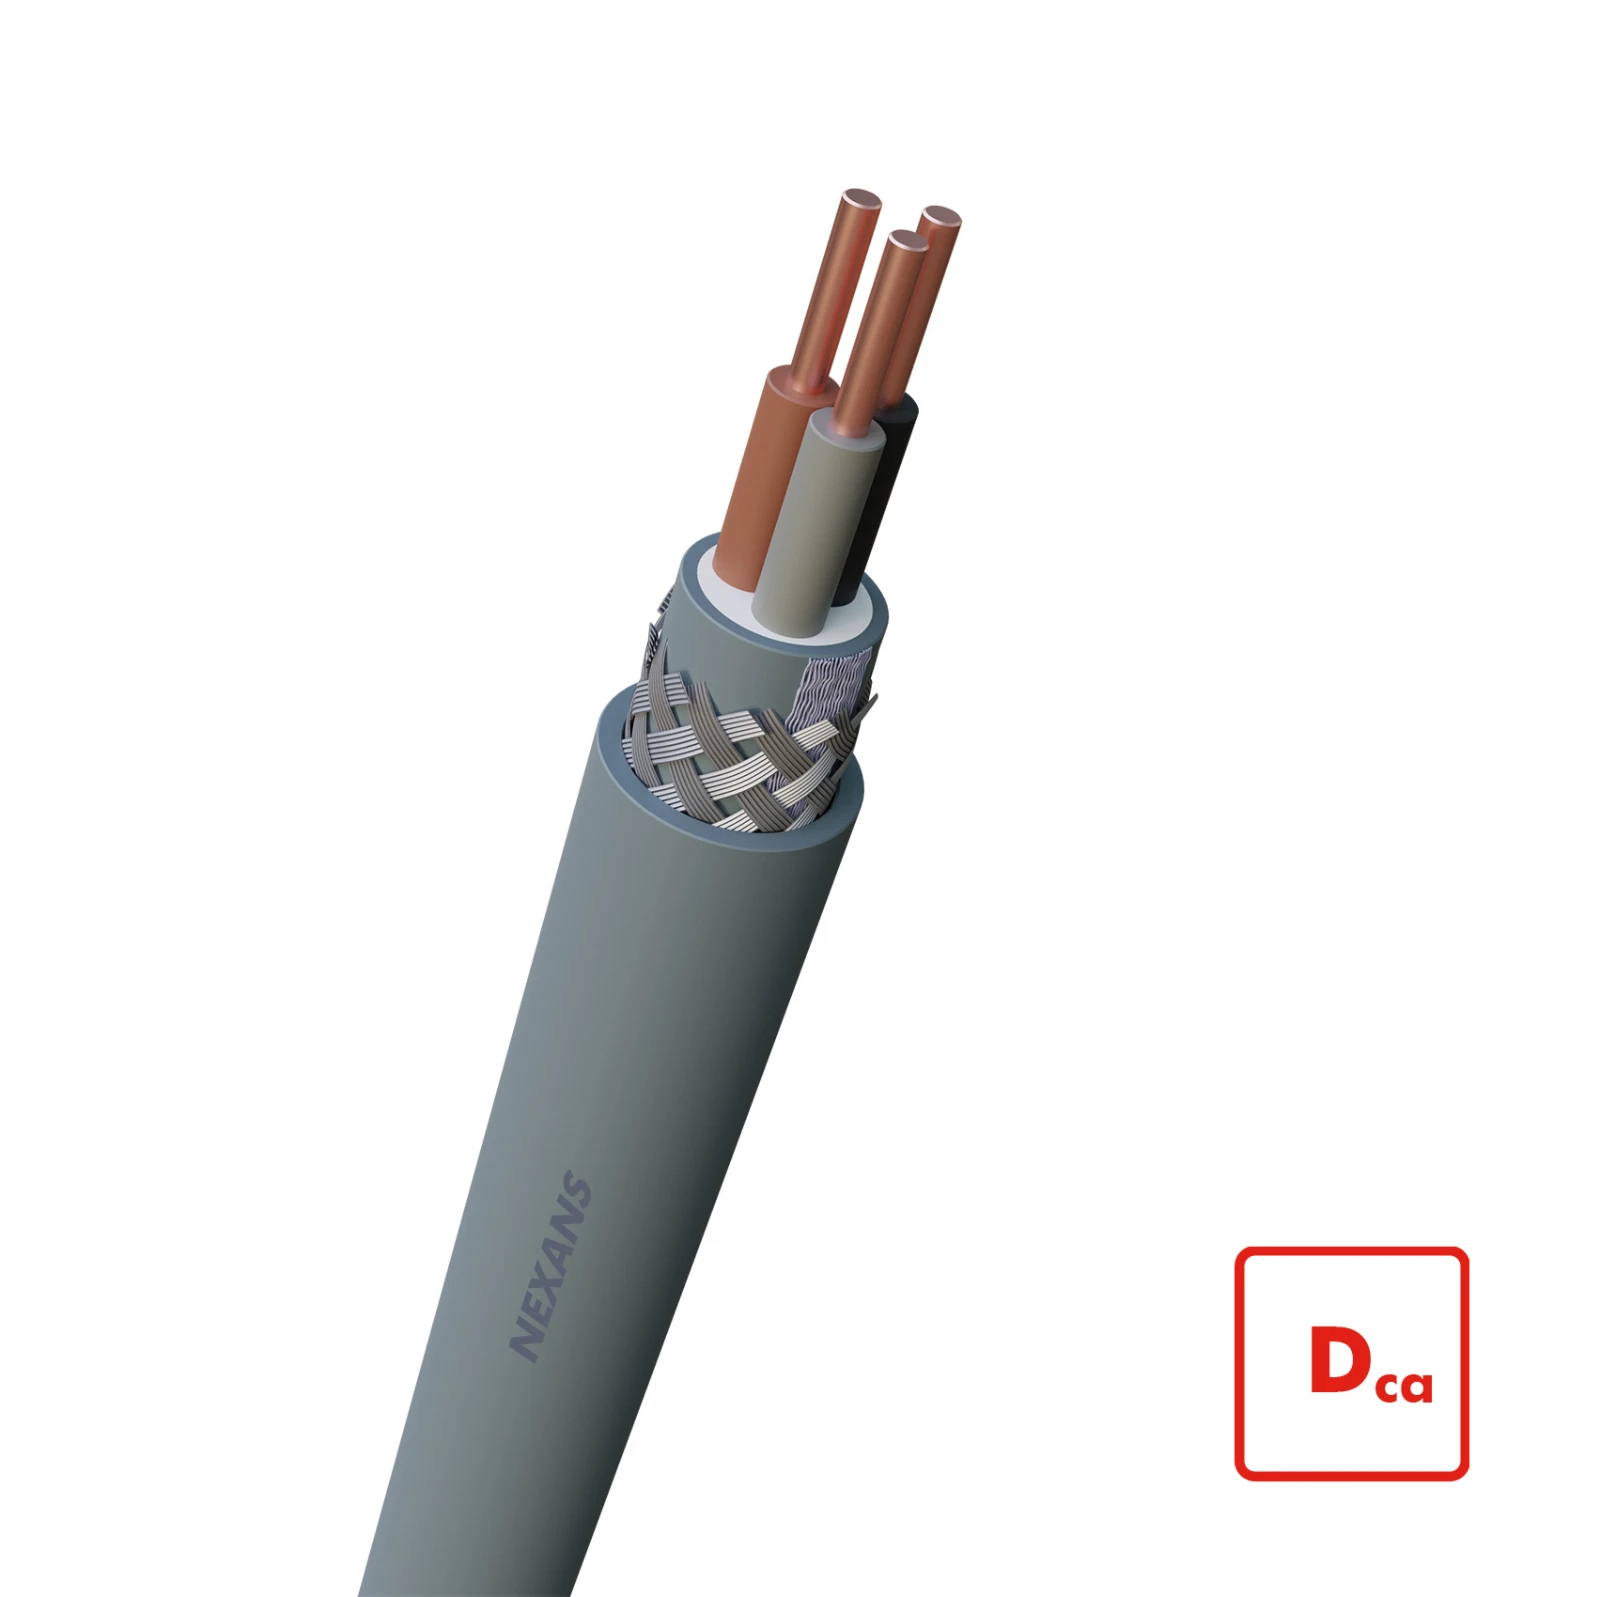 Nexans Voedingskabel >= 1 kV, voor vaste aanleg VO-YMvKas Dca-s2